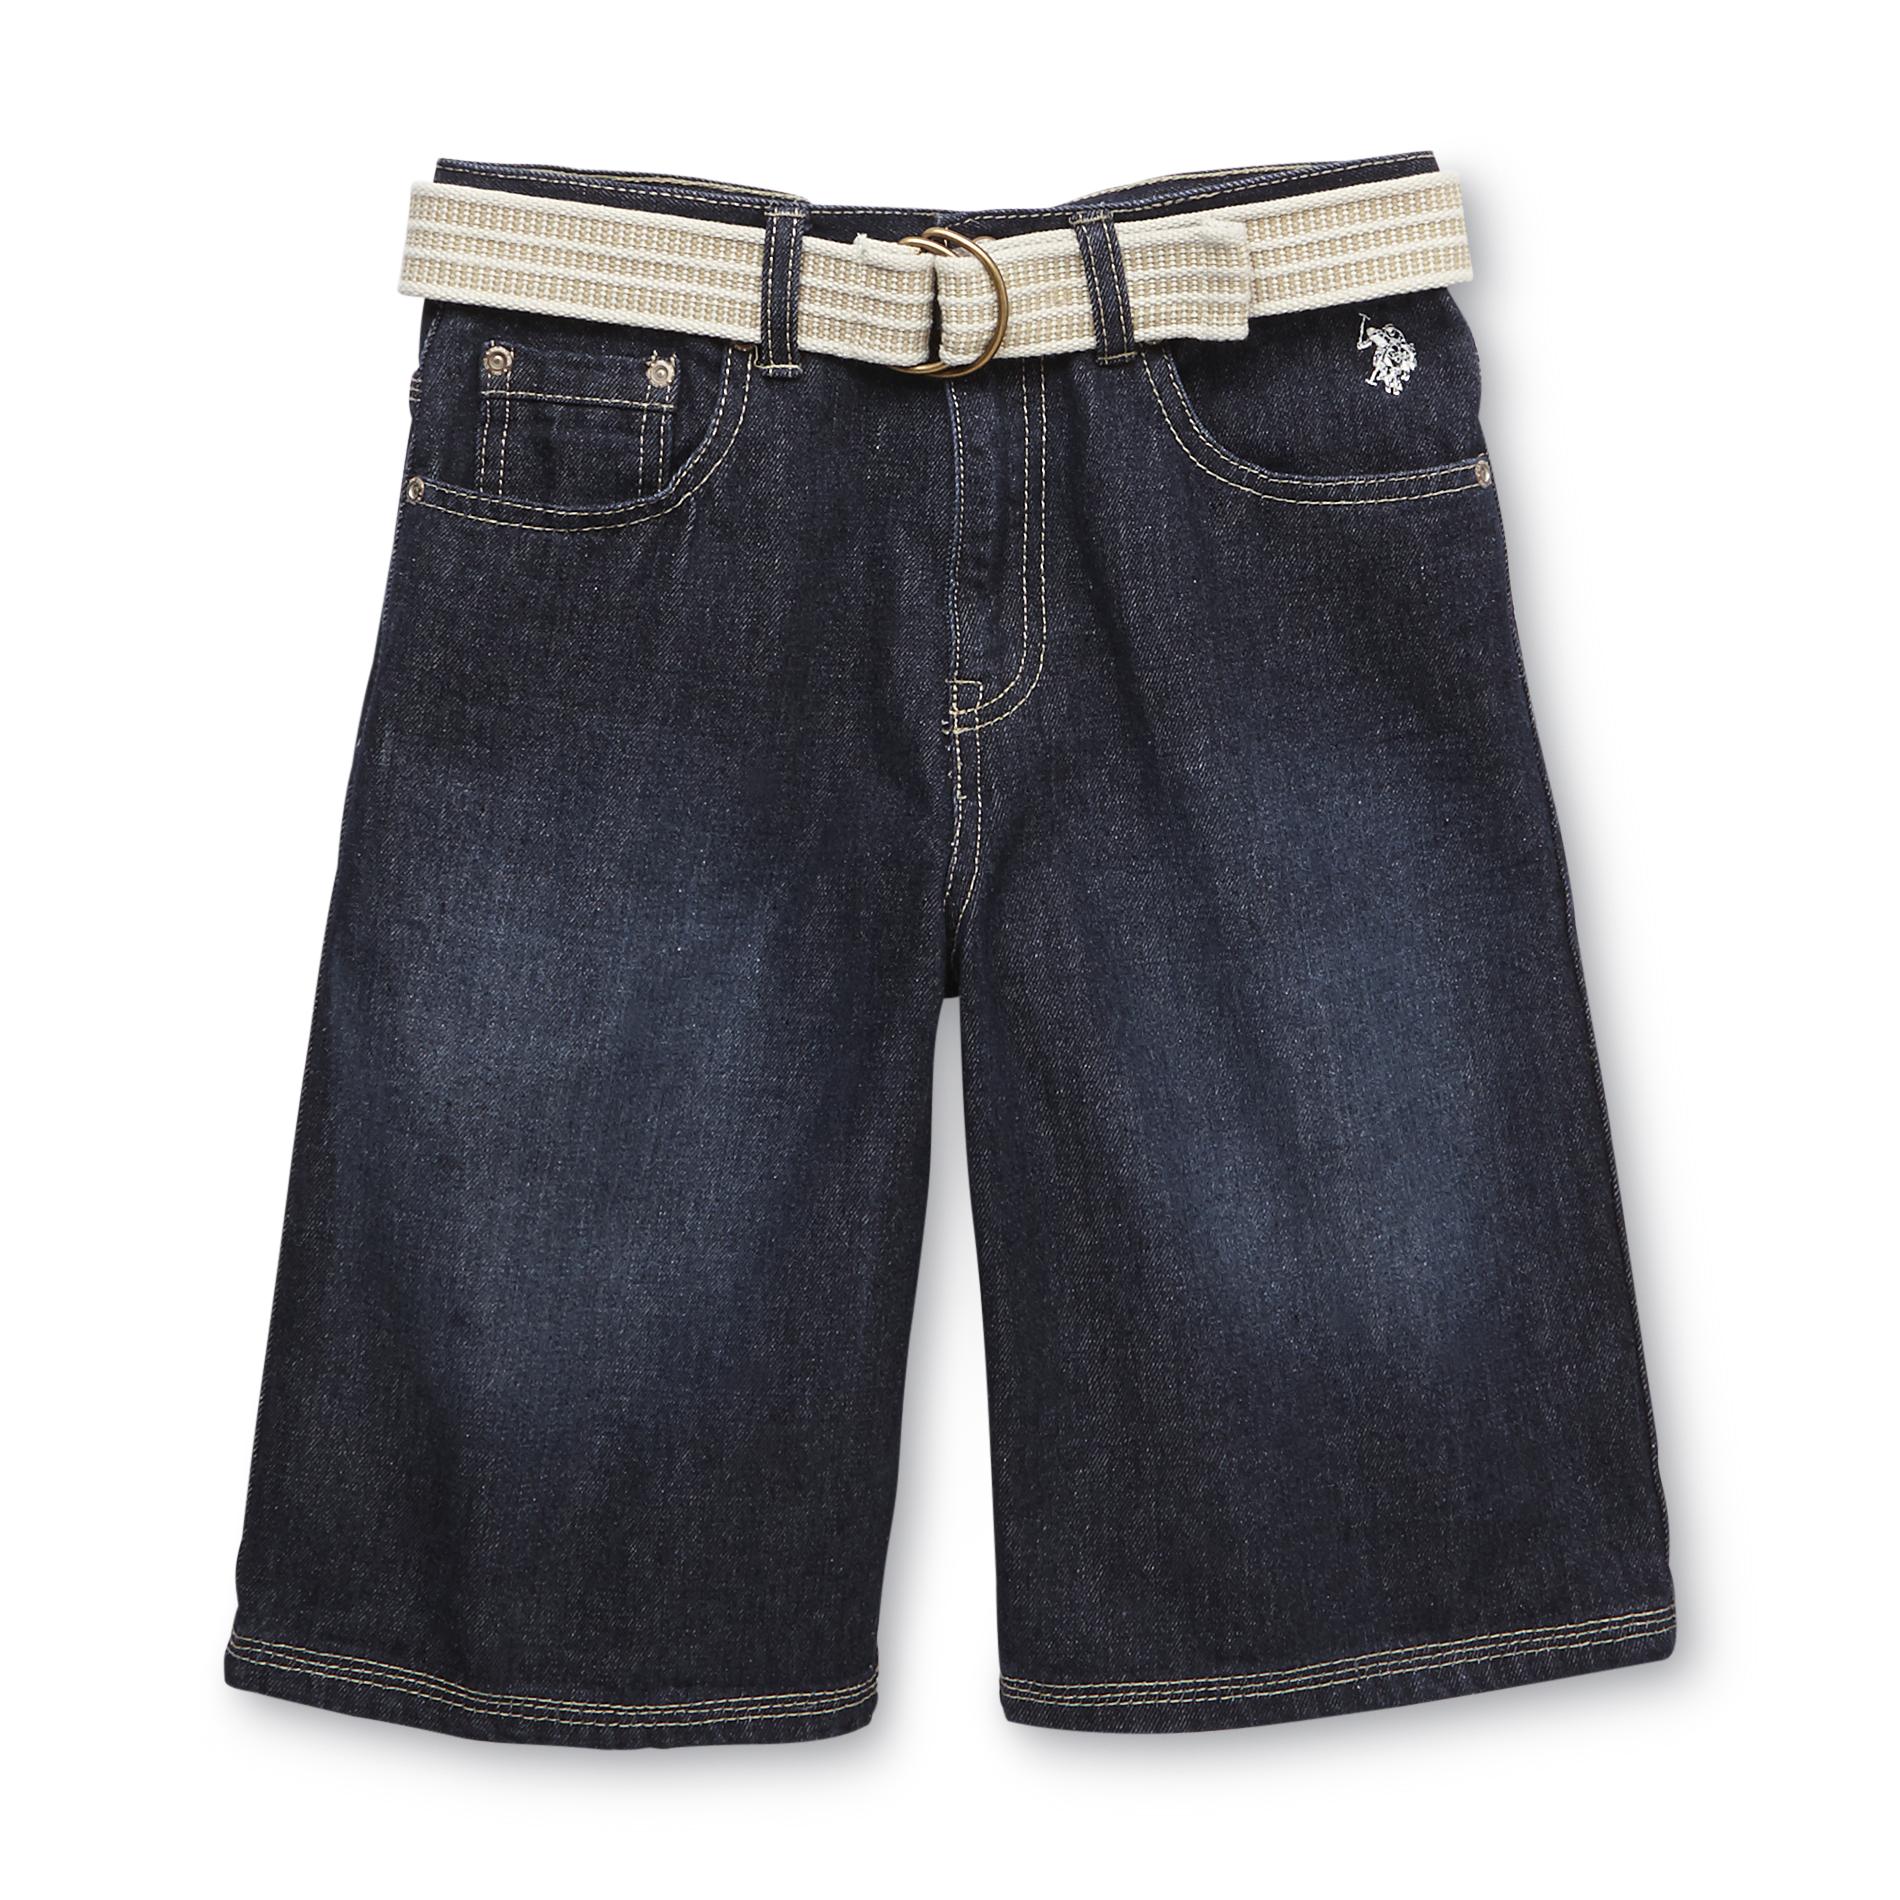 U.S. Polo Assn. Boy's Belted Denim Shorts